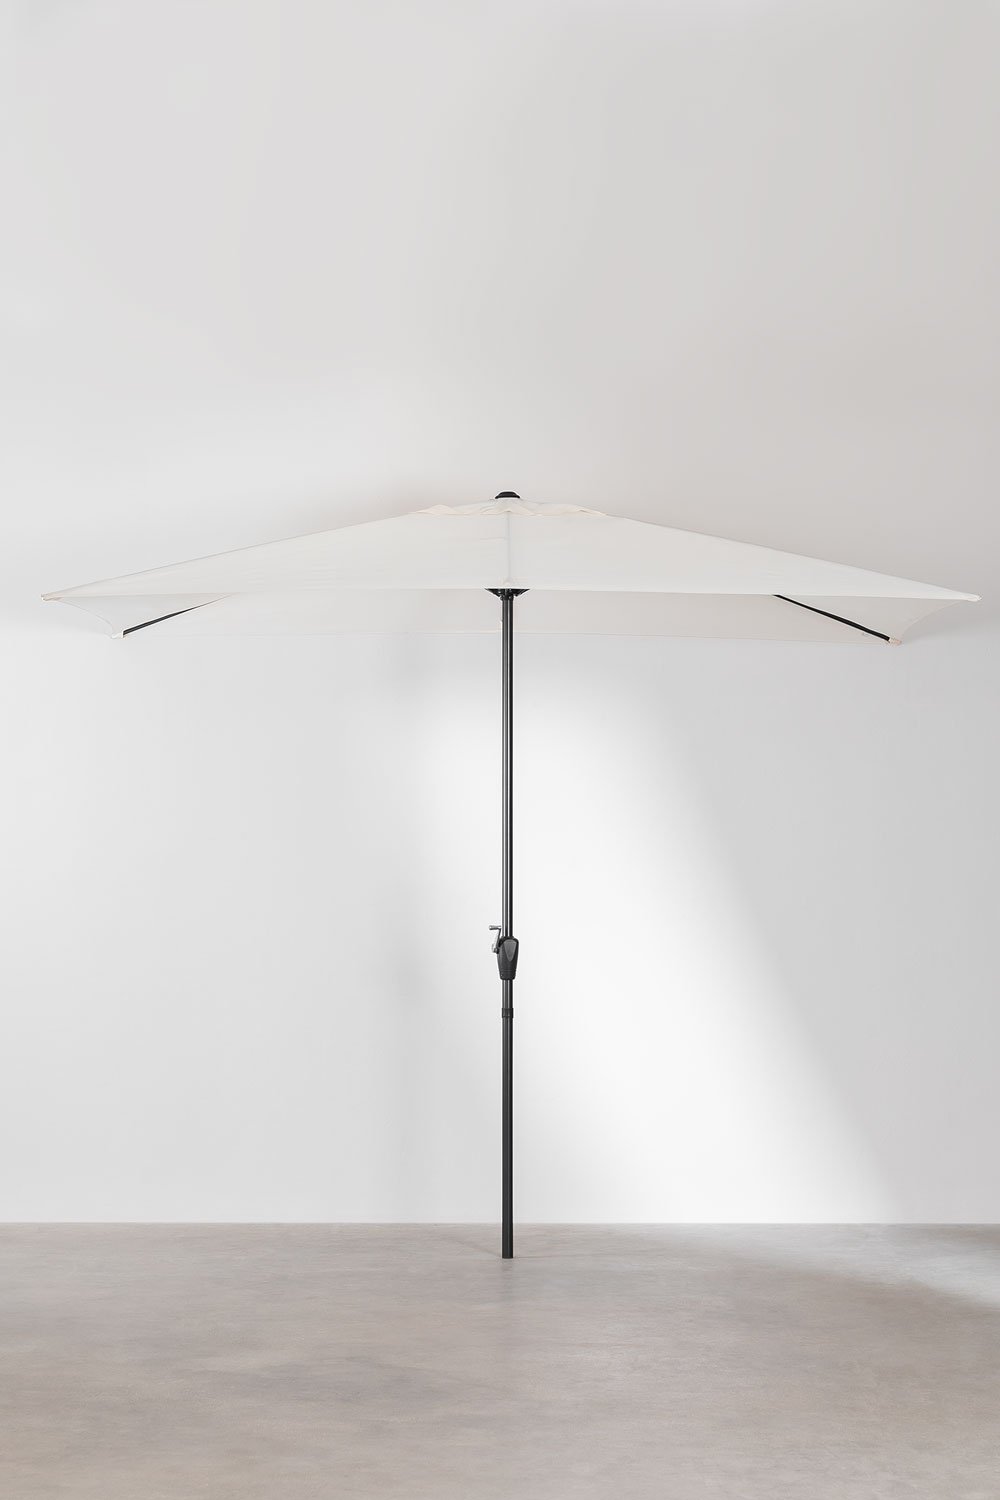 Paraplu van stof en staal (200x300 cm) Itzal, galerij beeld 1